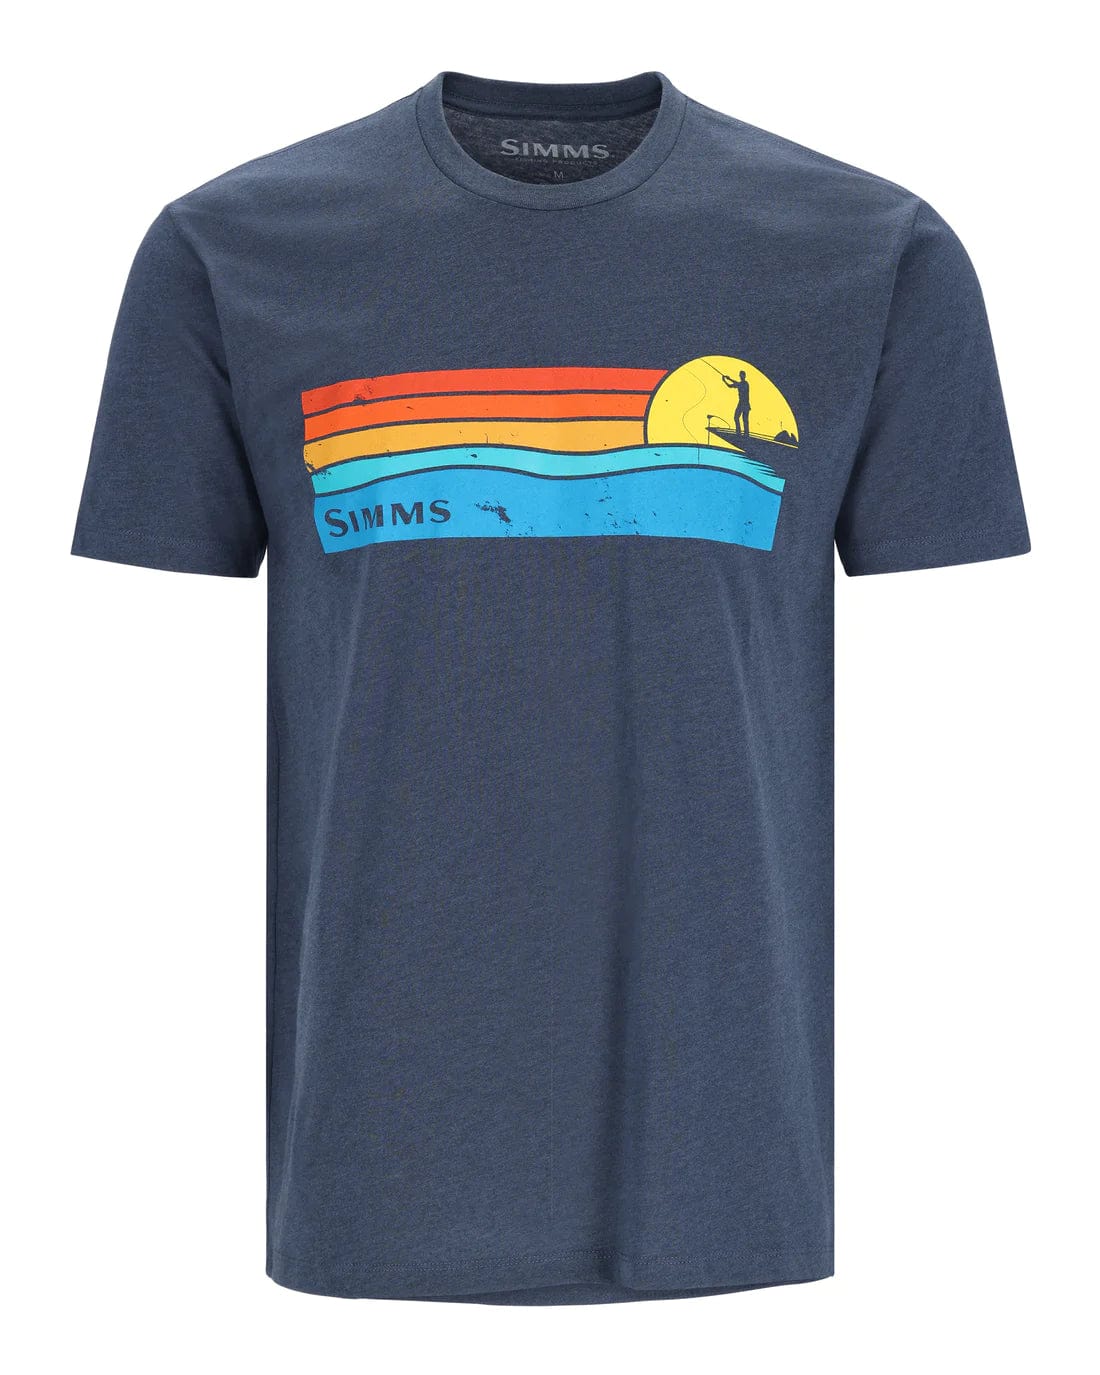 Men's Simms Sunset T-Shirt